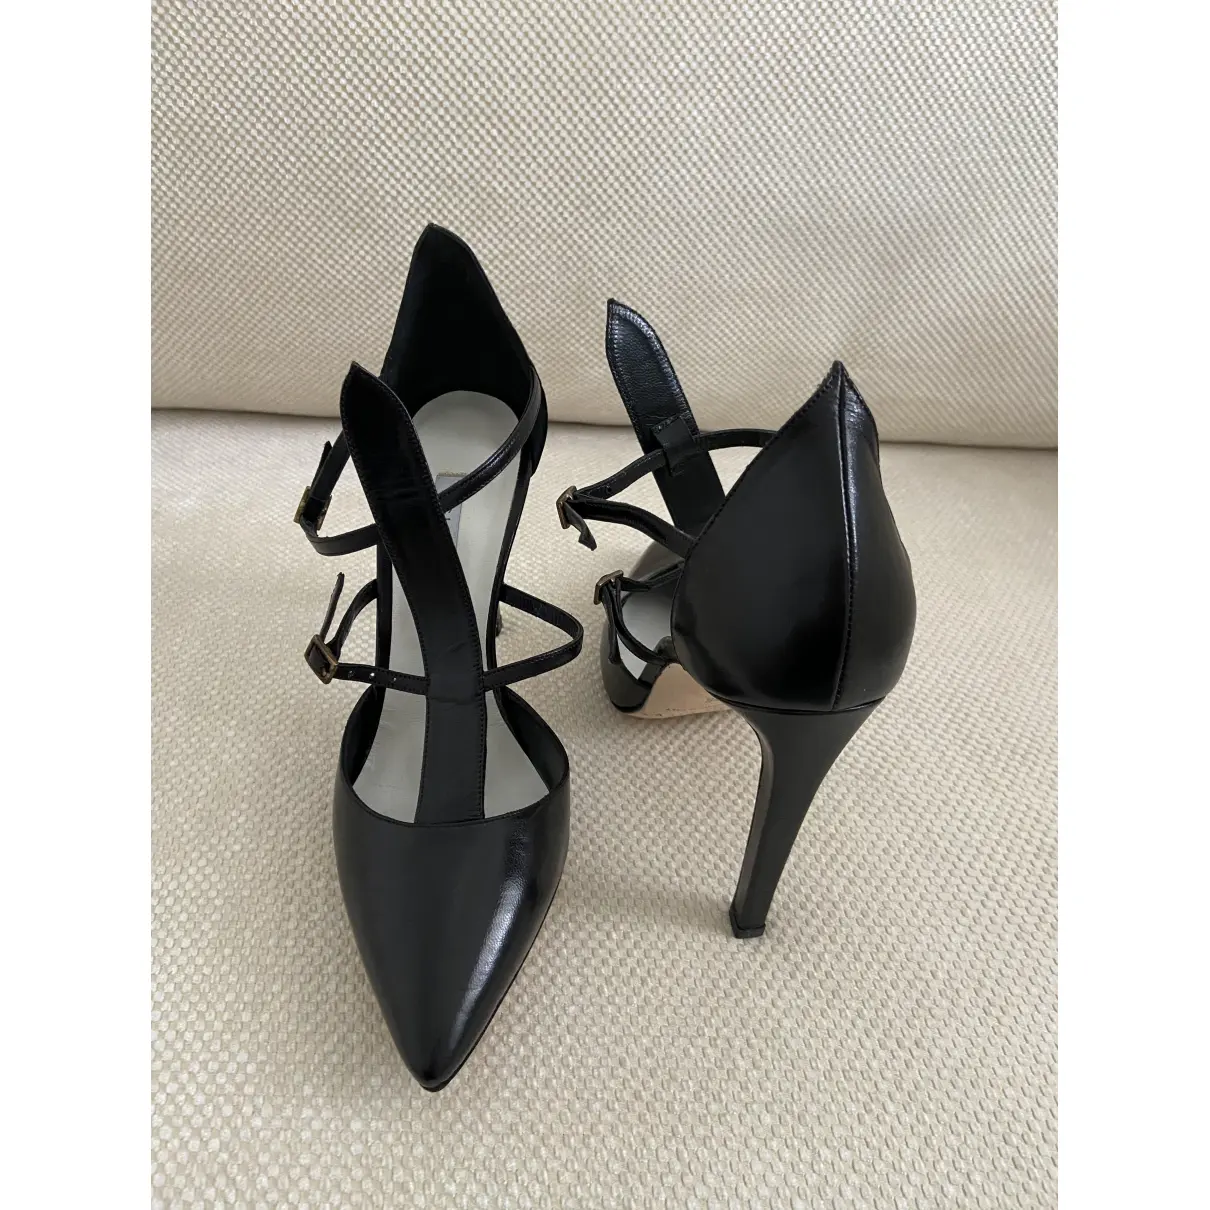 Buy Gio Diev Leather heels online